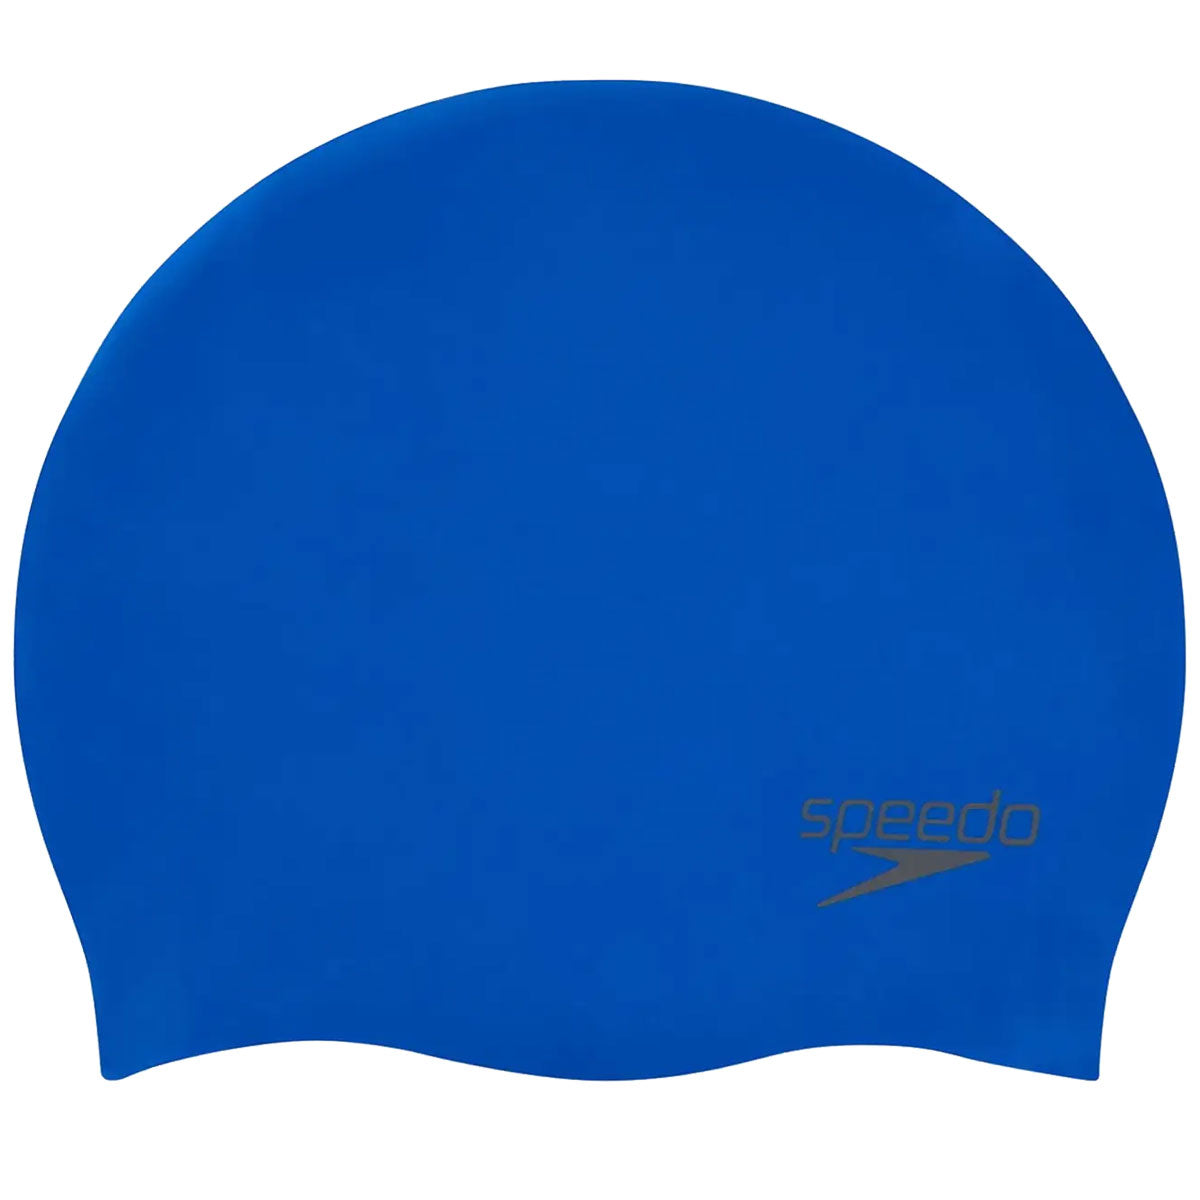 Speedo Plain Moulded Silicone Swim Cap - Junior